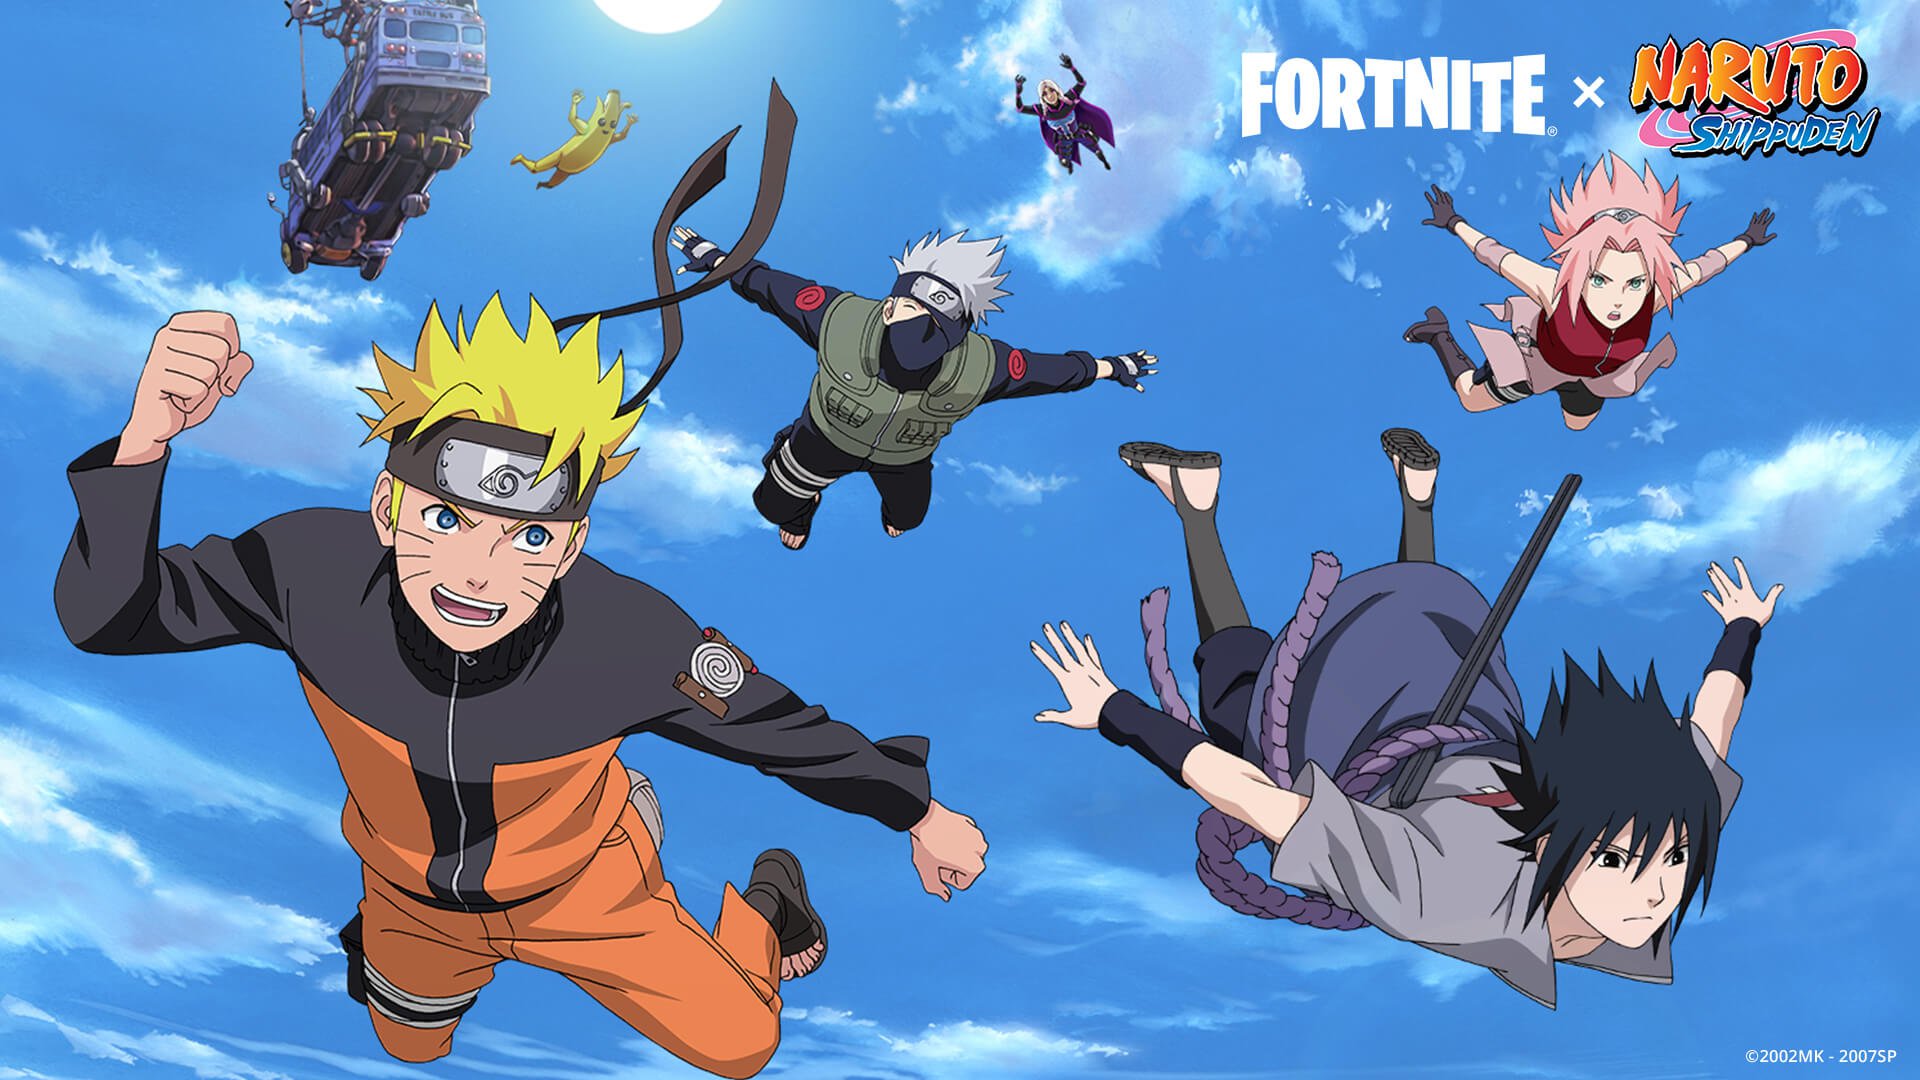 Fortnite crossover Naruto